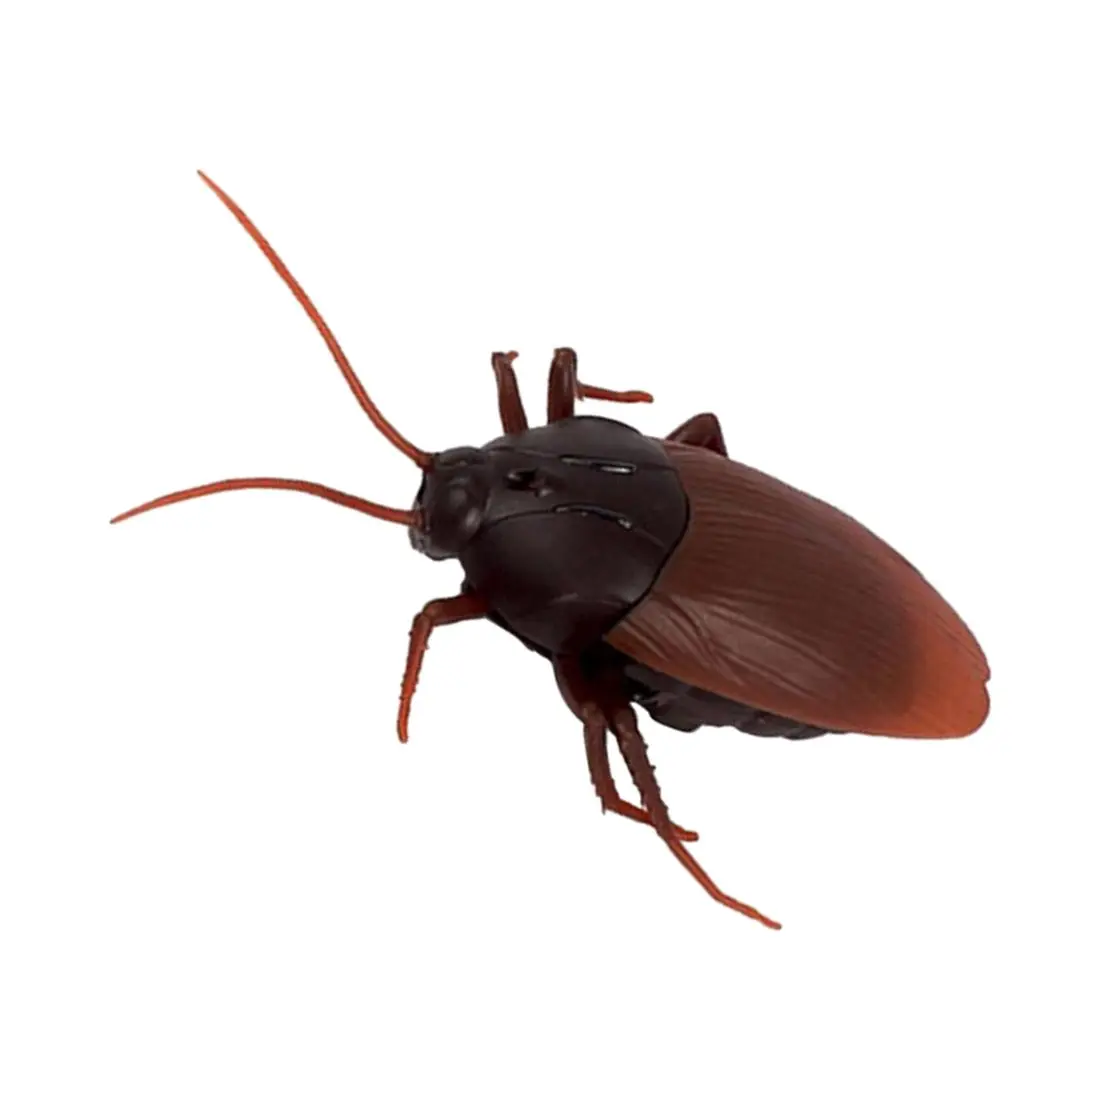 ABWE Лучшая Топ инфракрасный пульт дистанционного управления макет поддельные муравьи/тараканы/пауки RC игрушки для детей, темно-коричневый